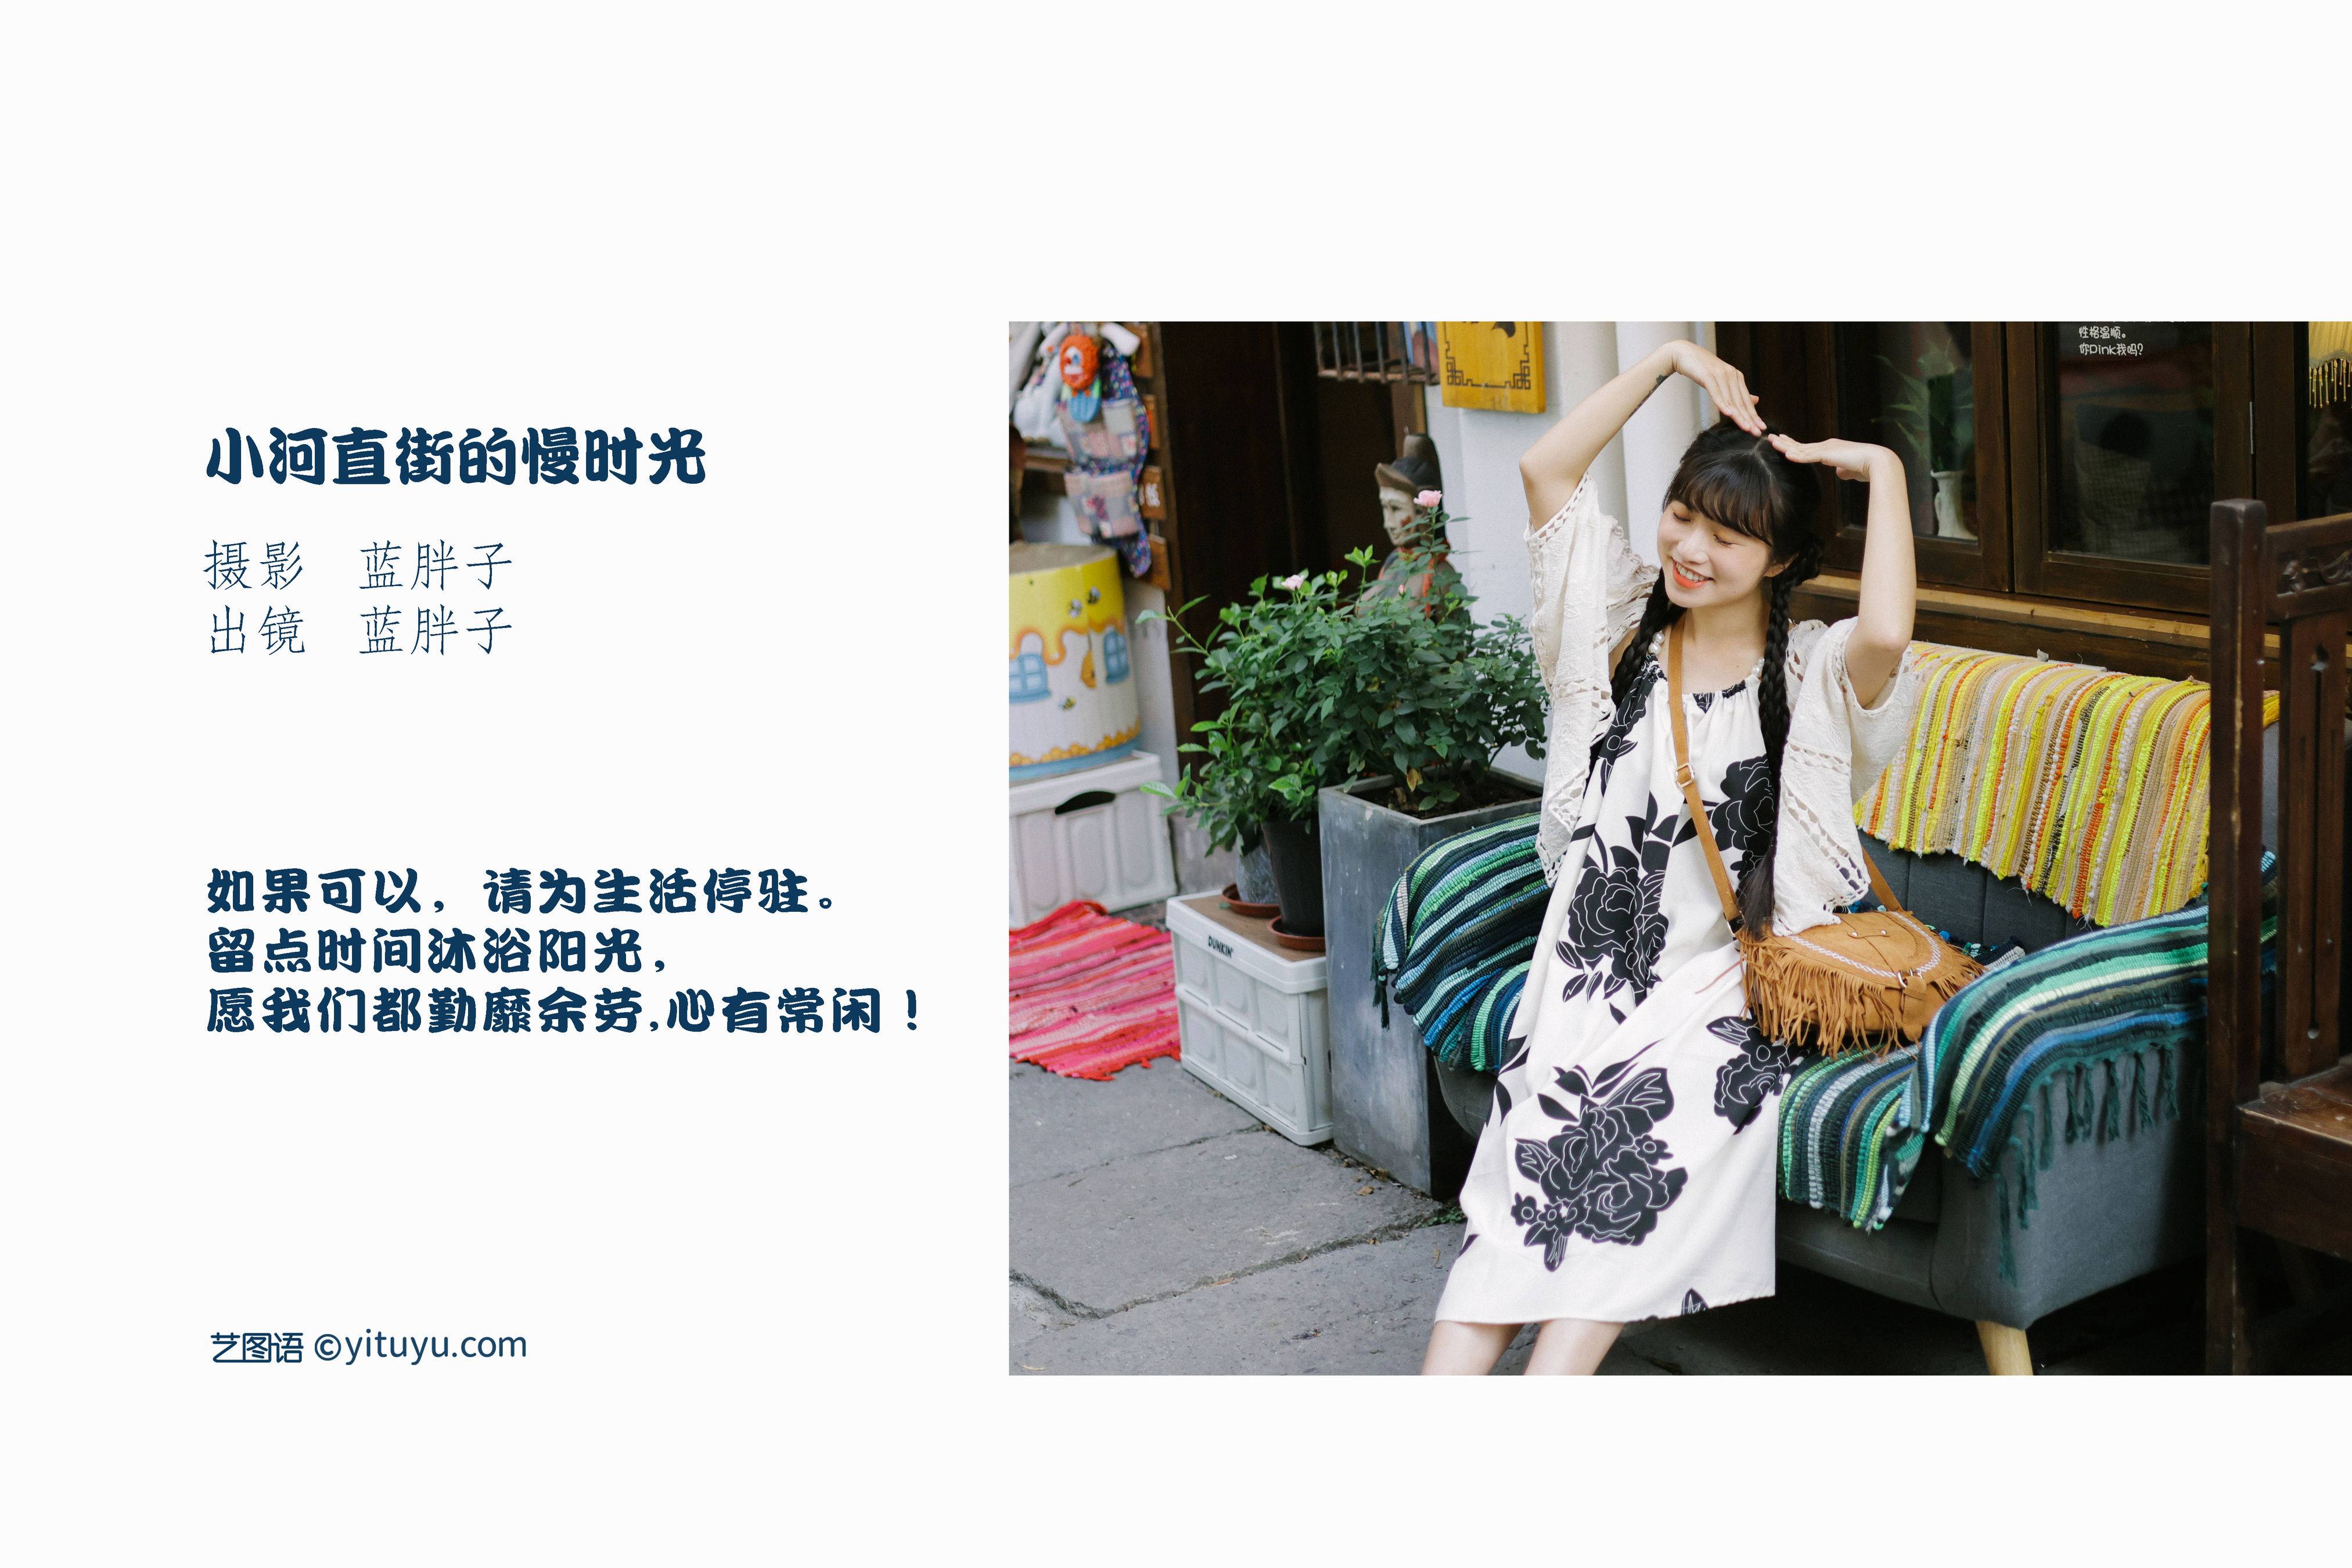 小河直街的慢时光 美好 日系 街拍 小清新 漂亮 萌妹子 写真集&YiTuYu艺图语-2